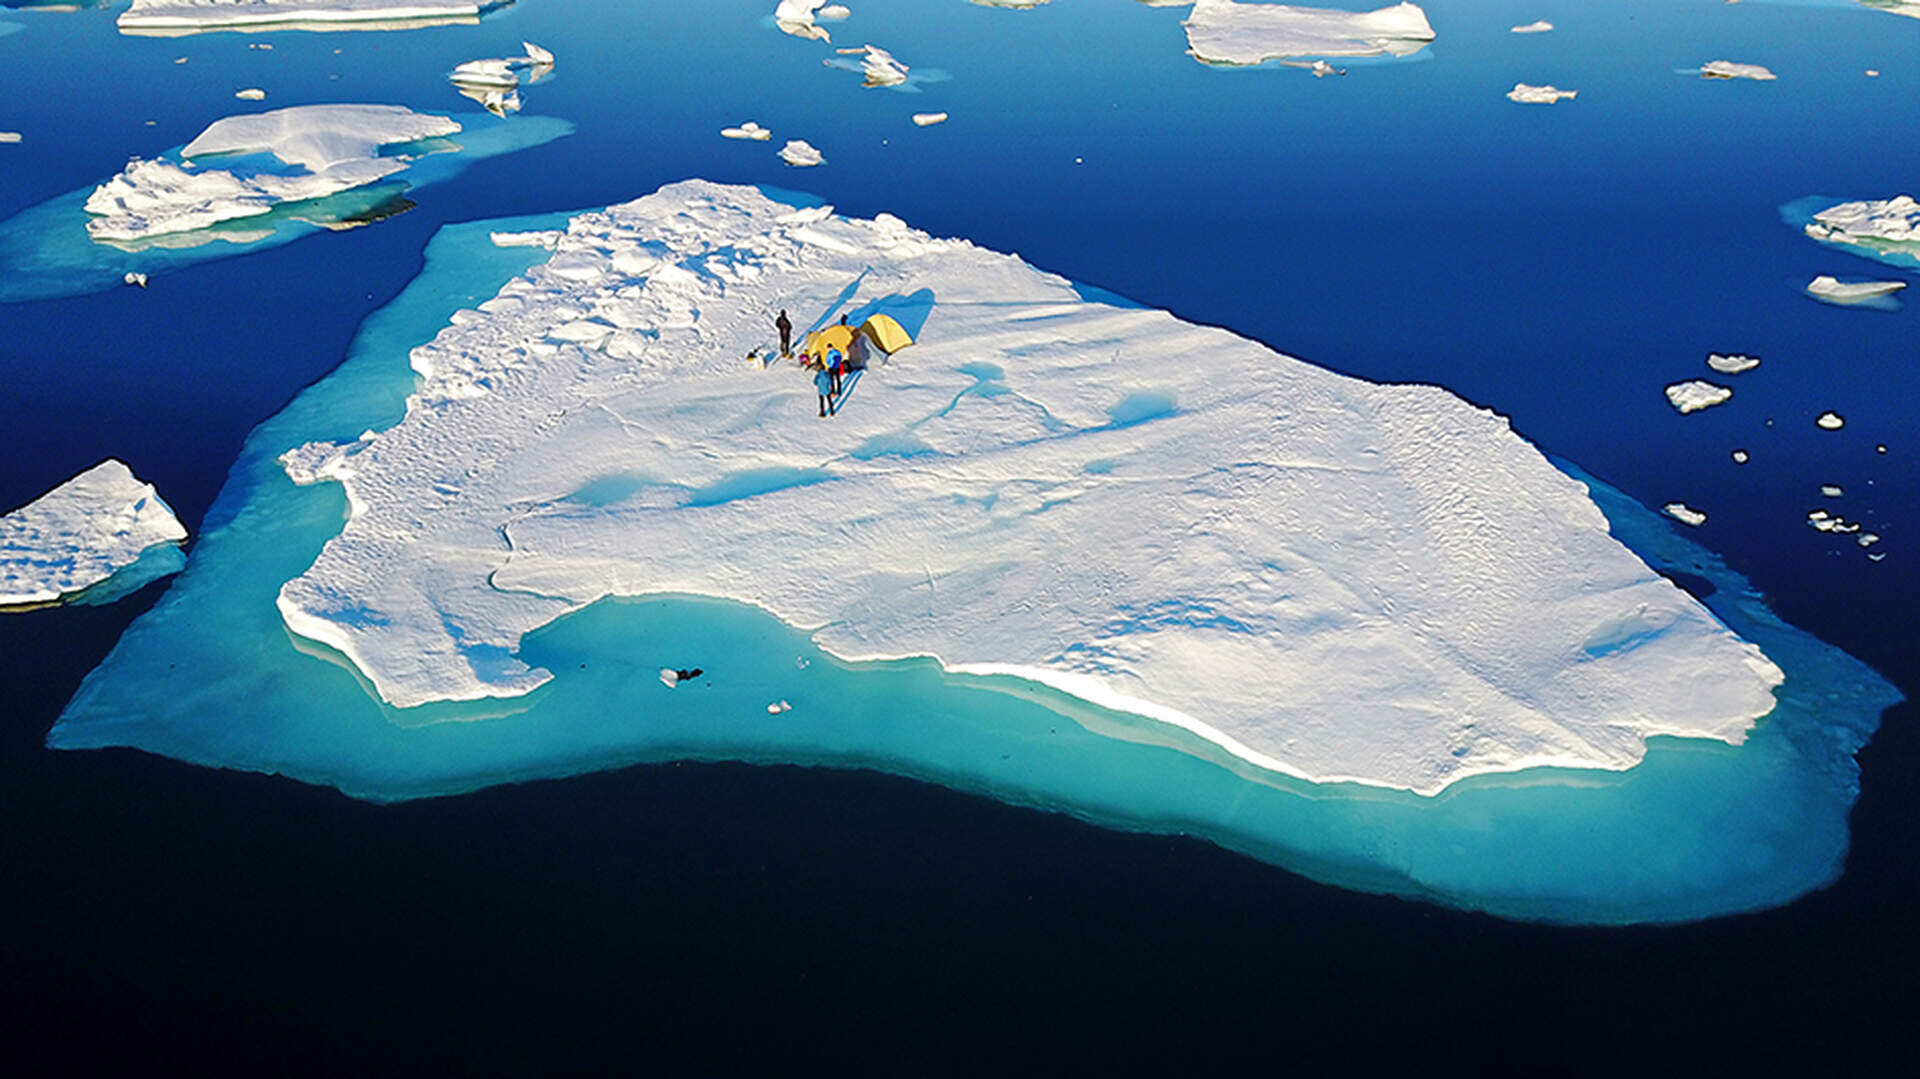 Abenteuer Grönland (Live-Reportage) - Szenenbild 4 von 4